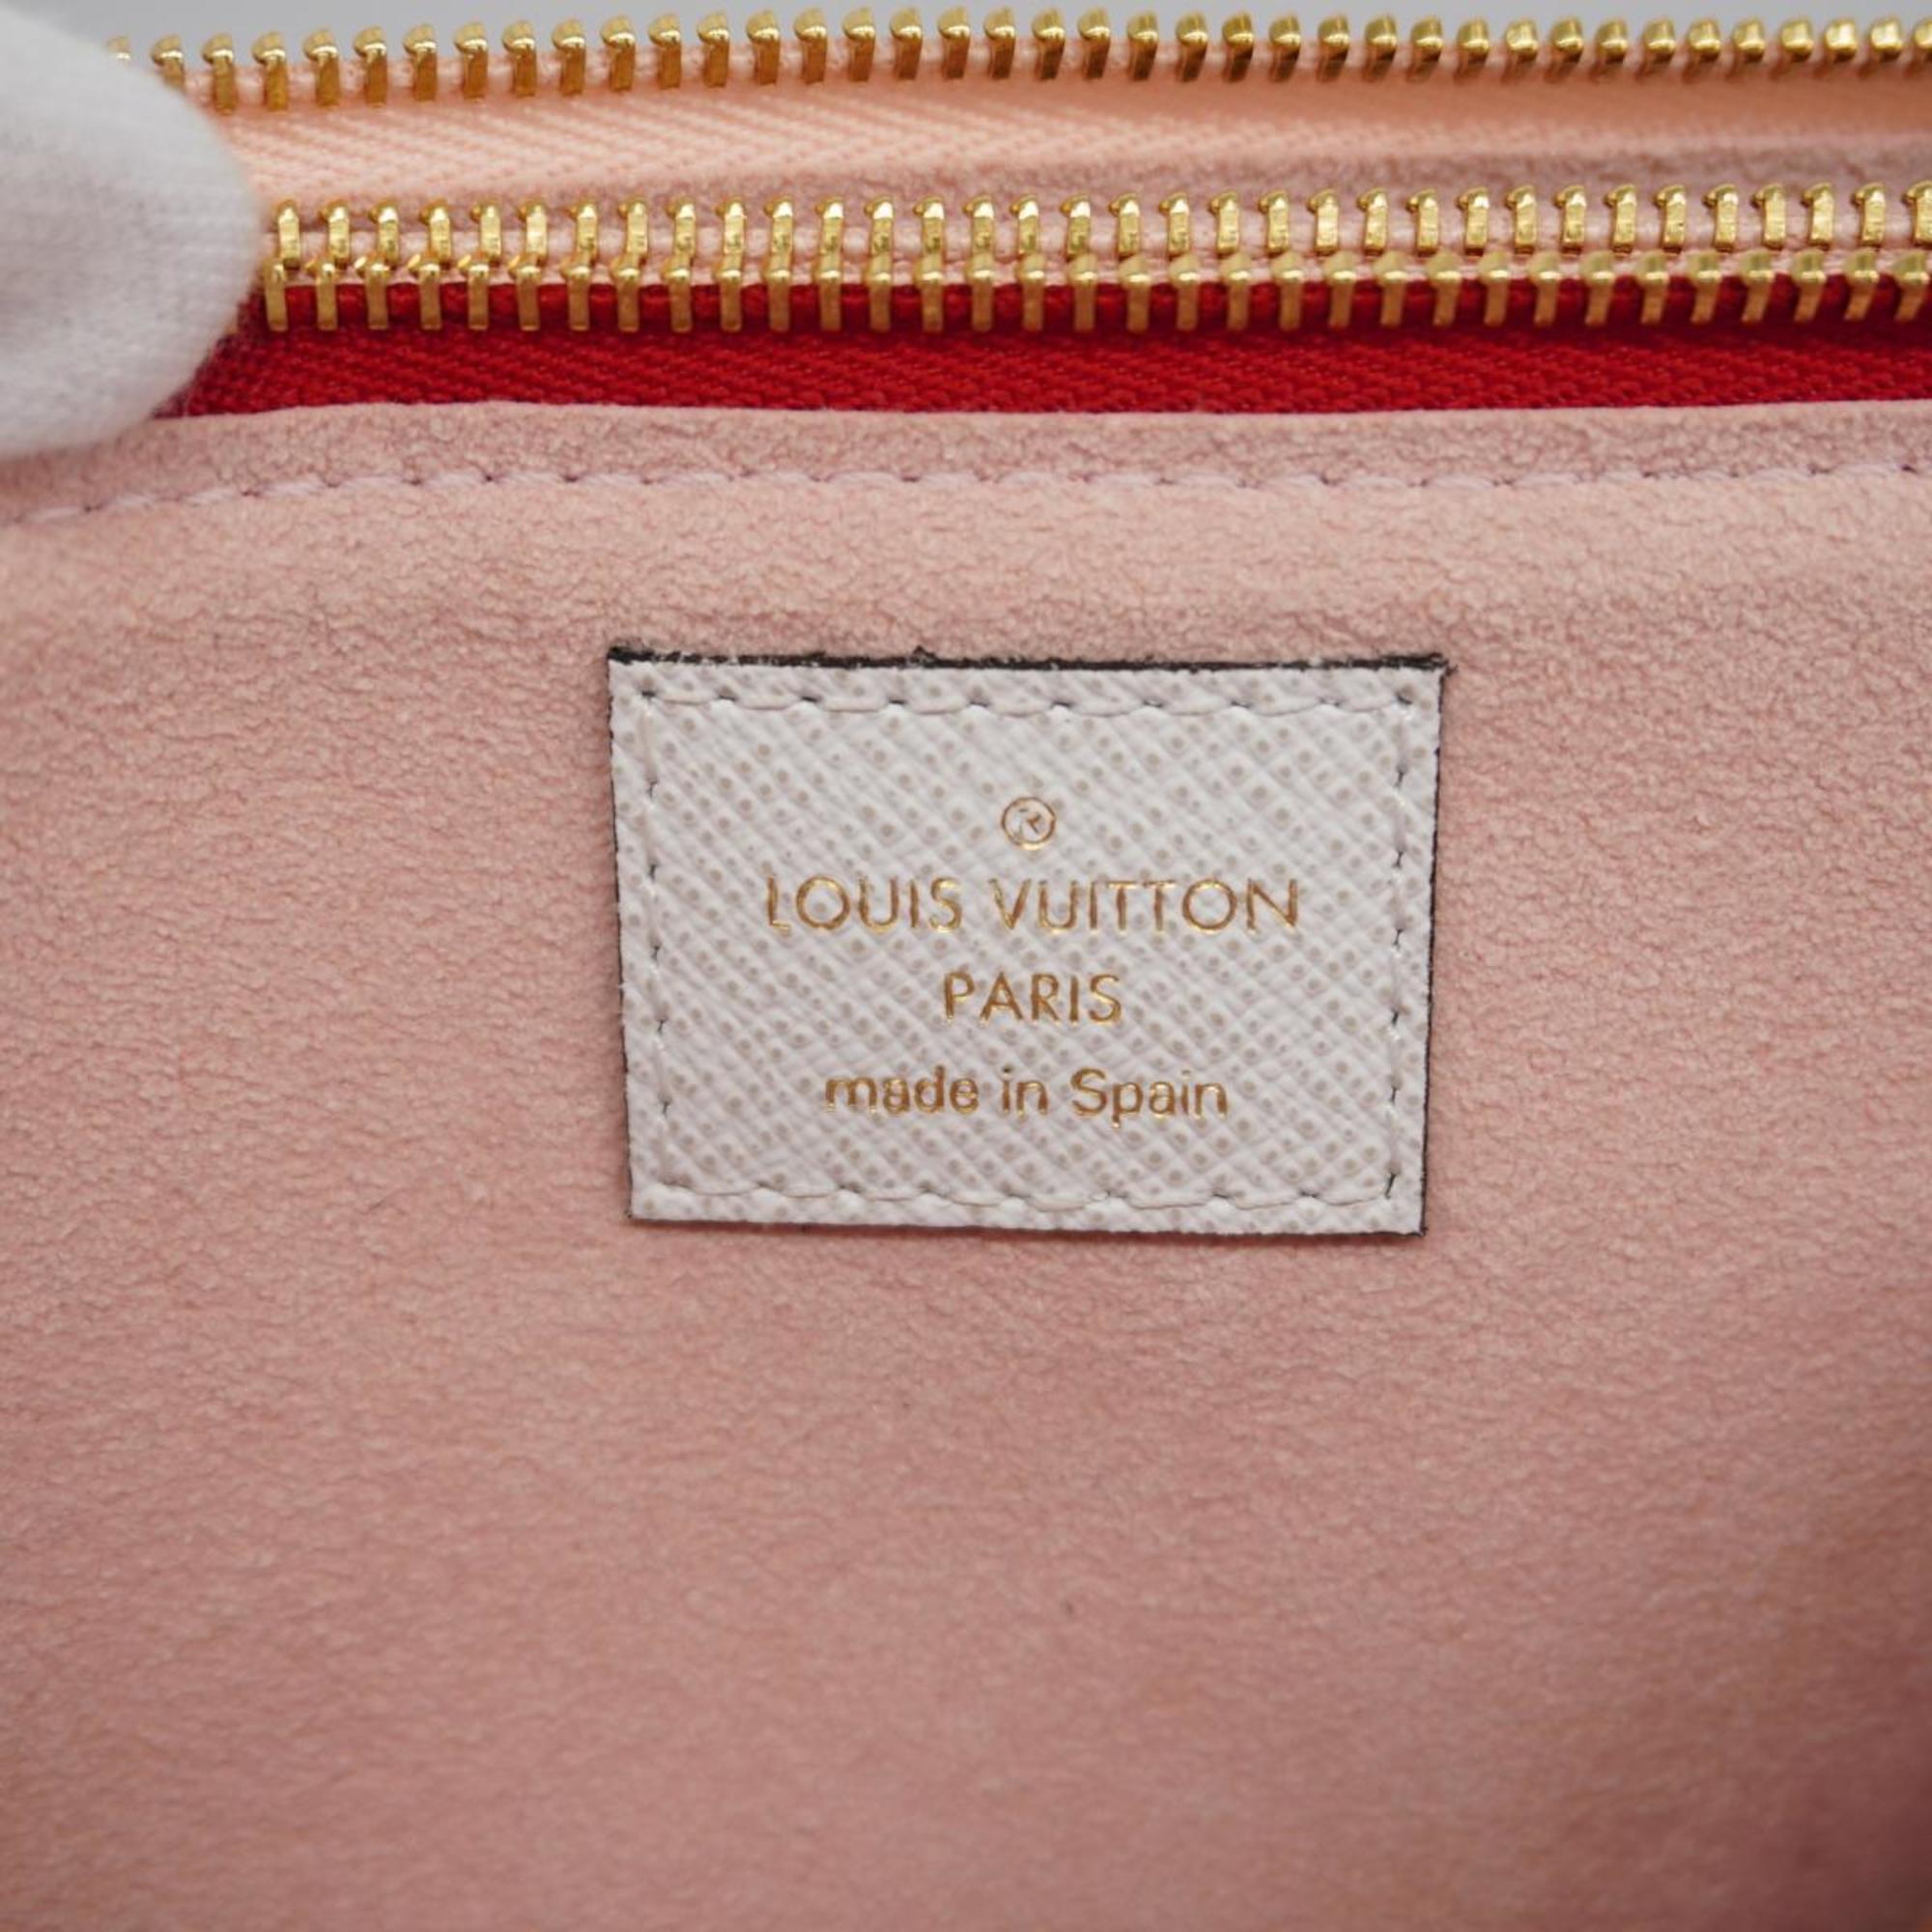 ルイ・ヴィトン(Louis Vuitton) ルイ・ヴィトン ショルダーウォレット モノグラム・ジャイアント ポシェット ドゥーブルジップ M67561 レッド ピンクレディース